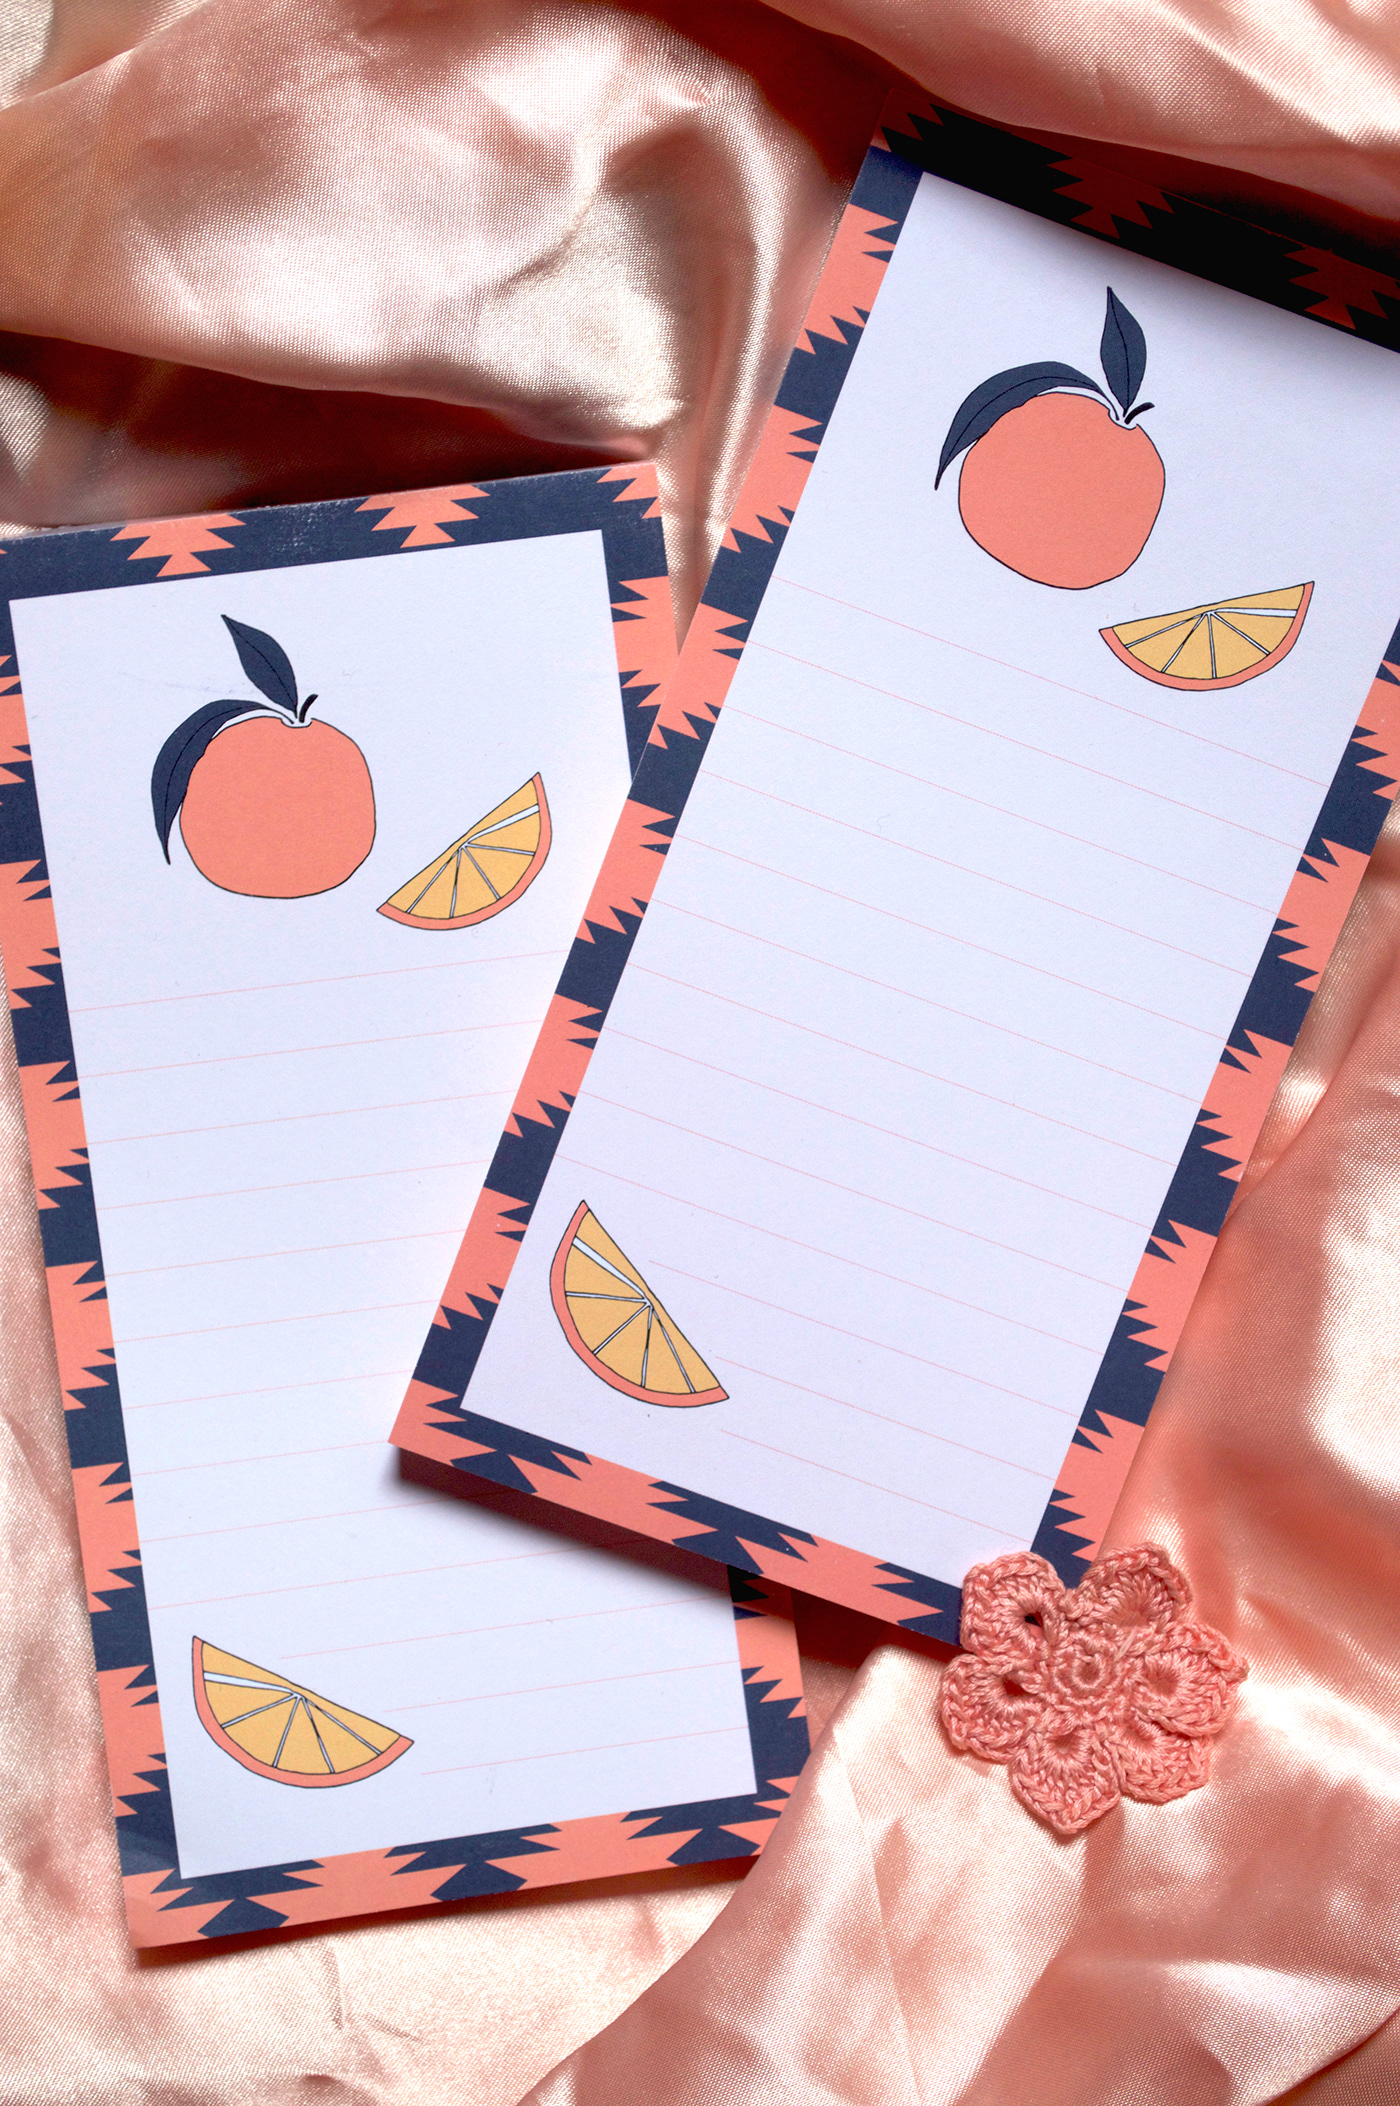 Fruit ILLUSTRATION  ilustracion notepads orange Pear product design  Stationery stationery design strawberry